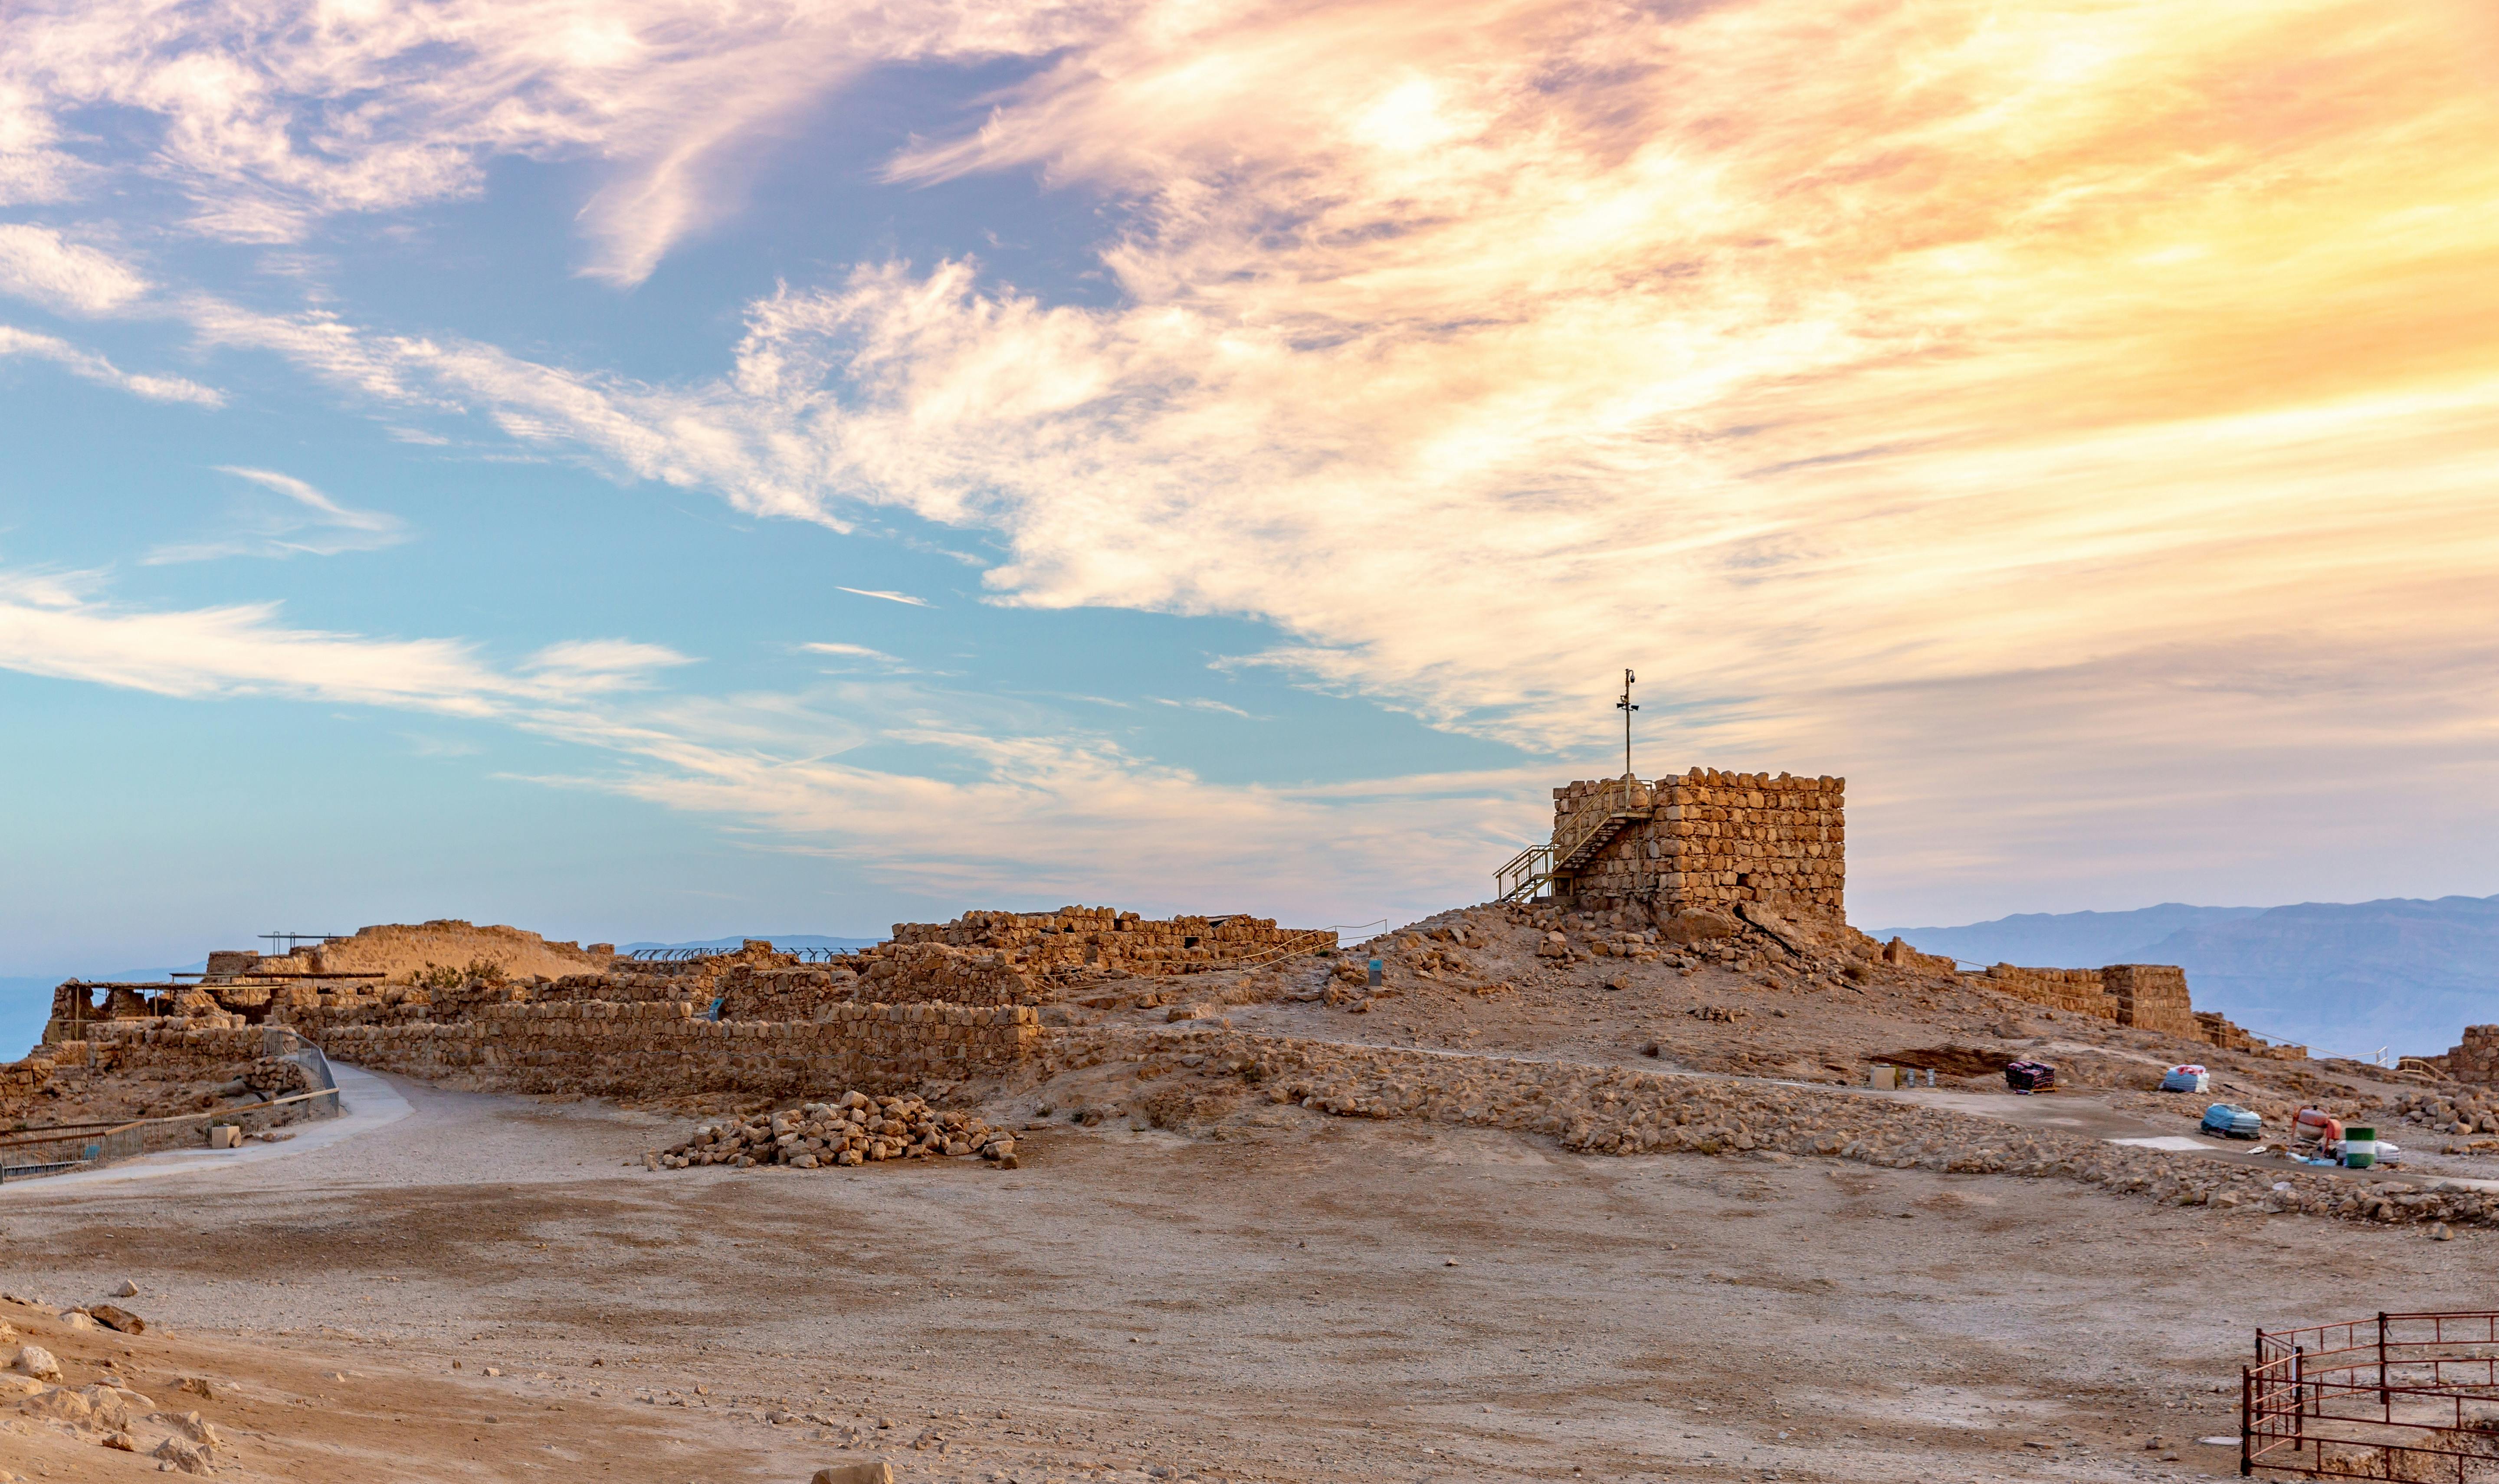 Selbstgeführte Audiotour durch die Festung Masada in Israel